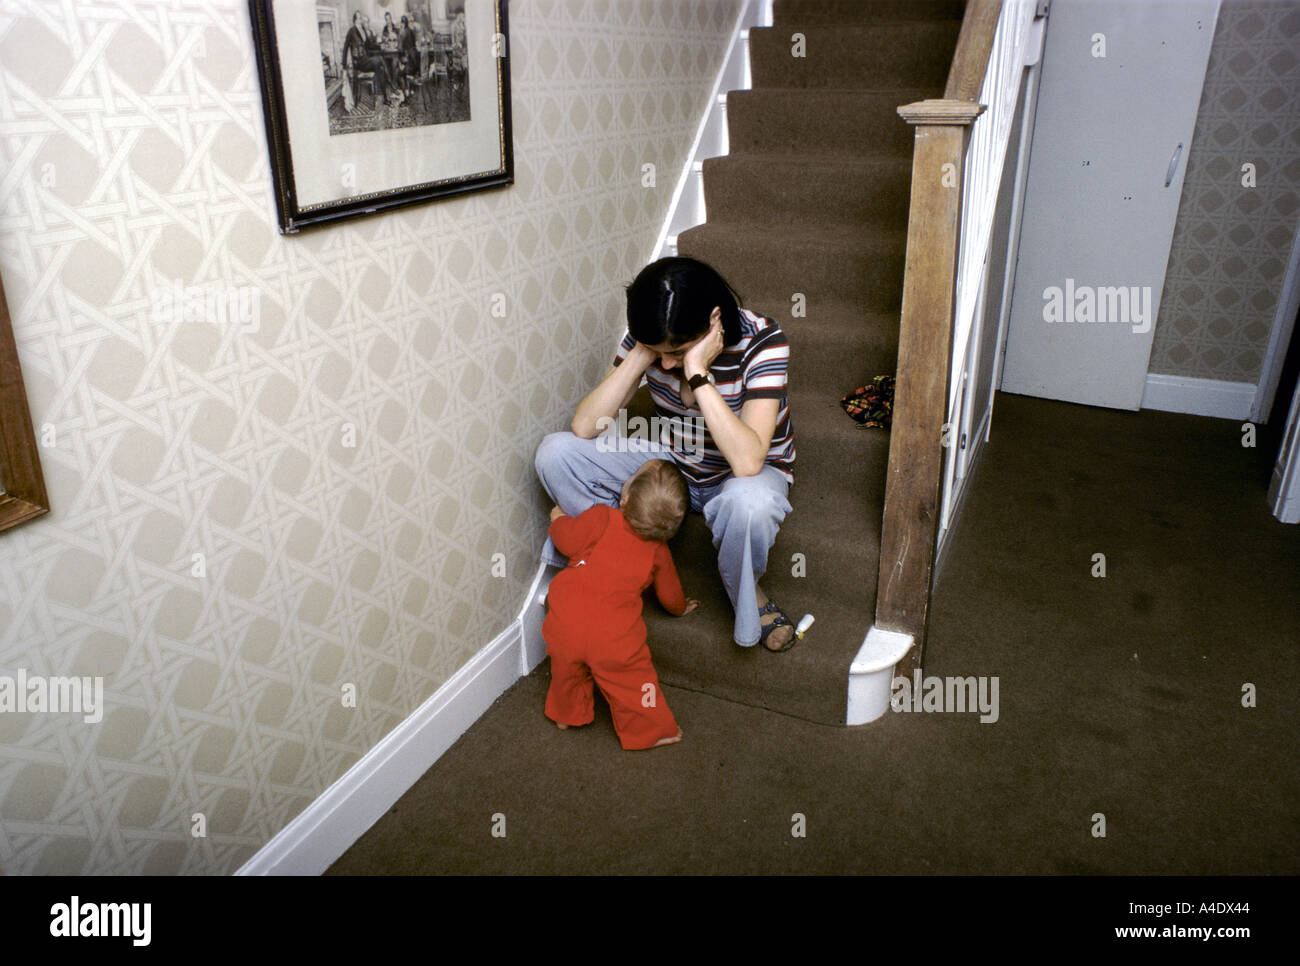 Frau sitzt auf einem Schritt am unteren Ende der Treppe mit Kind sah sie an Depressionen leiden Stockfoto